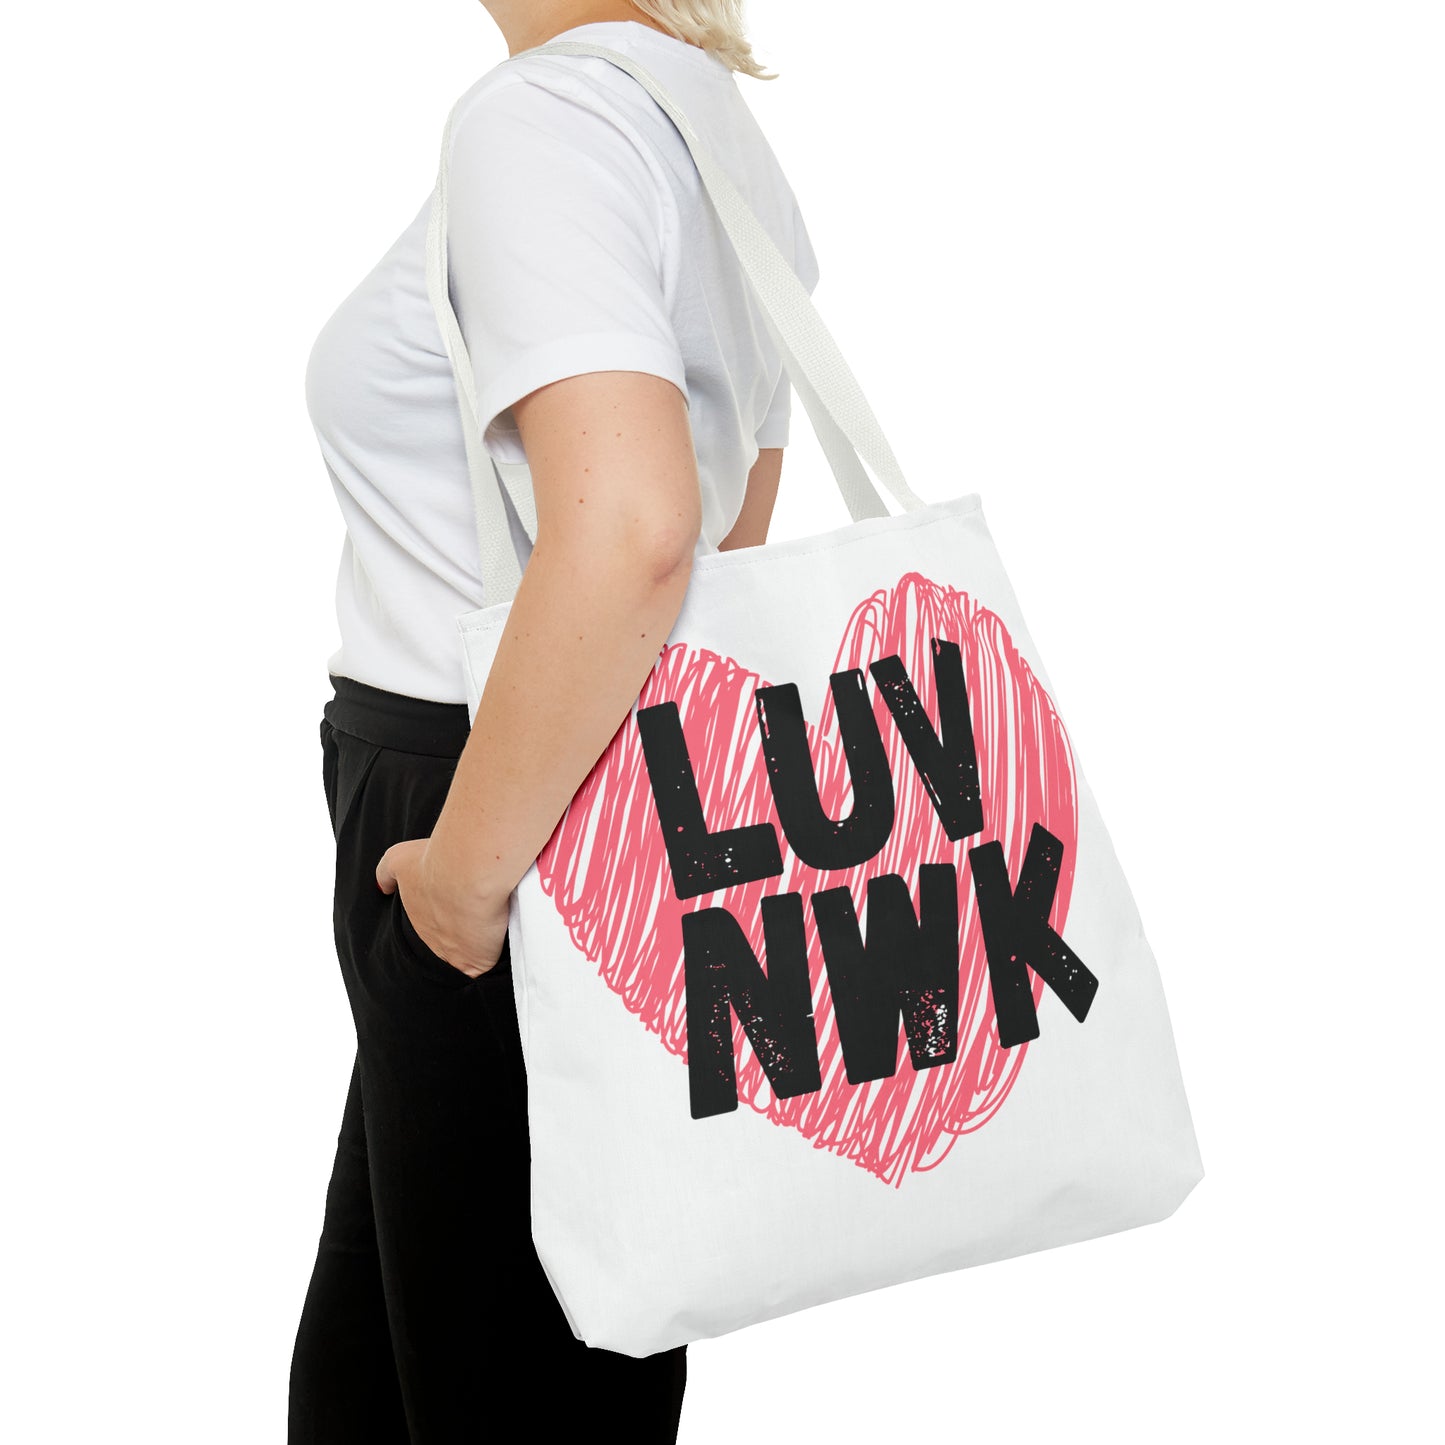 LUV NWK - Tote Bag